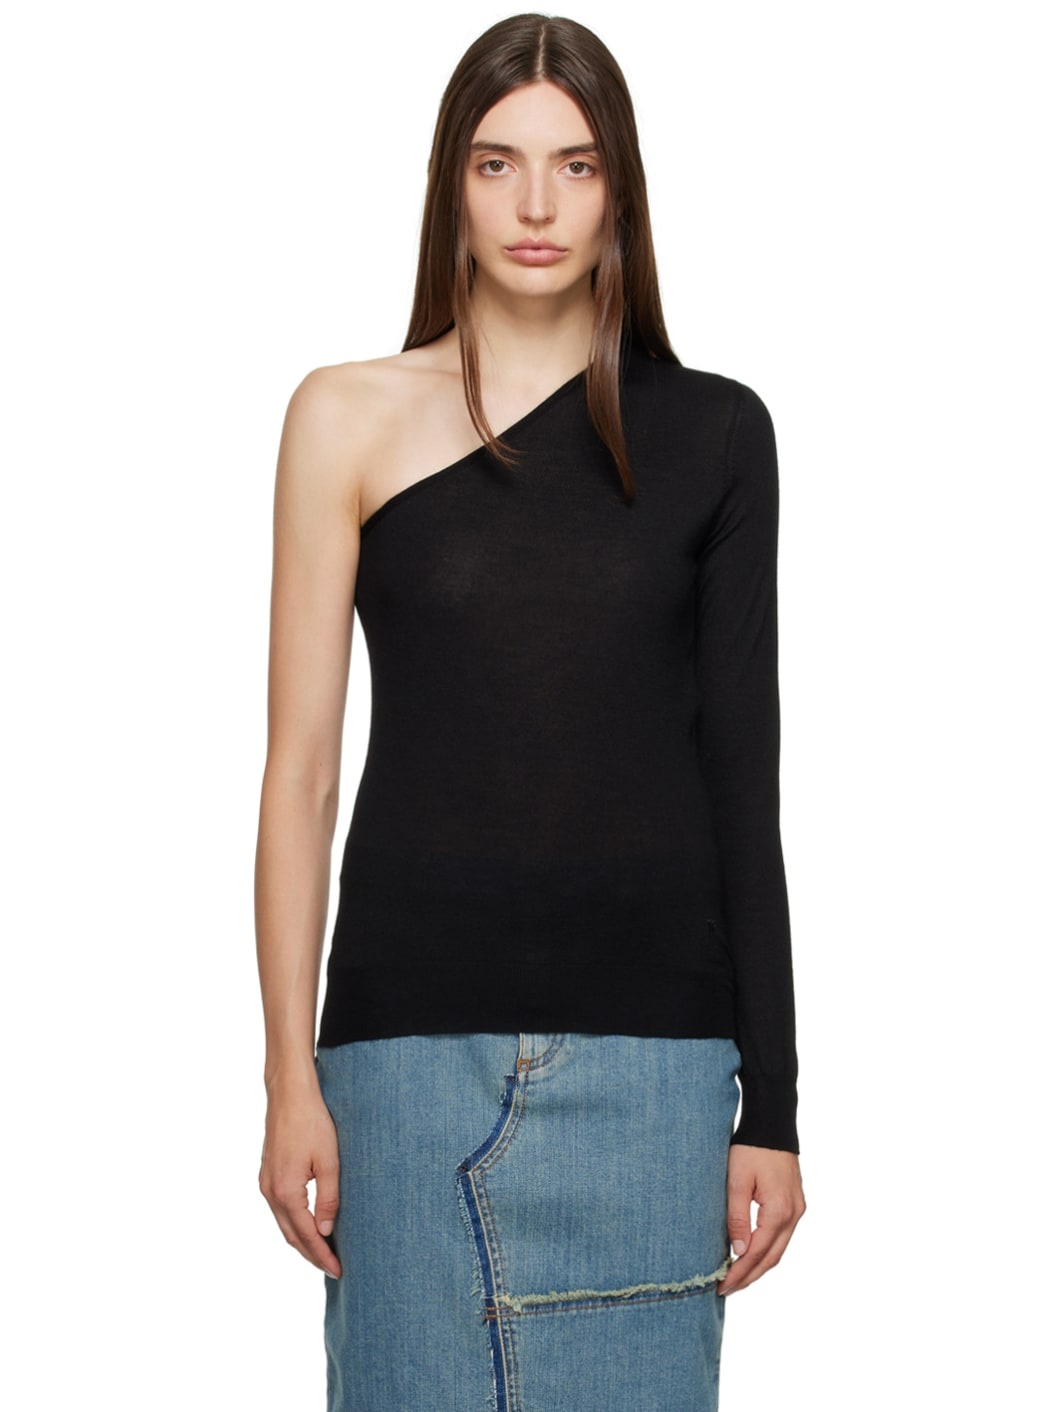 Black Single-Shoulder Sweater - 1